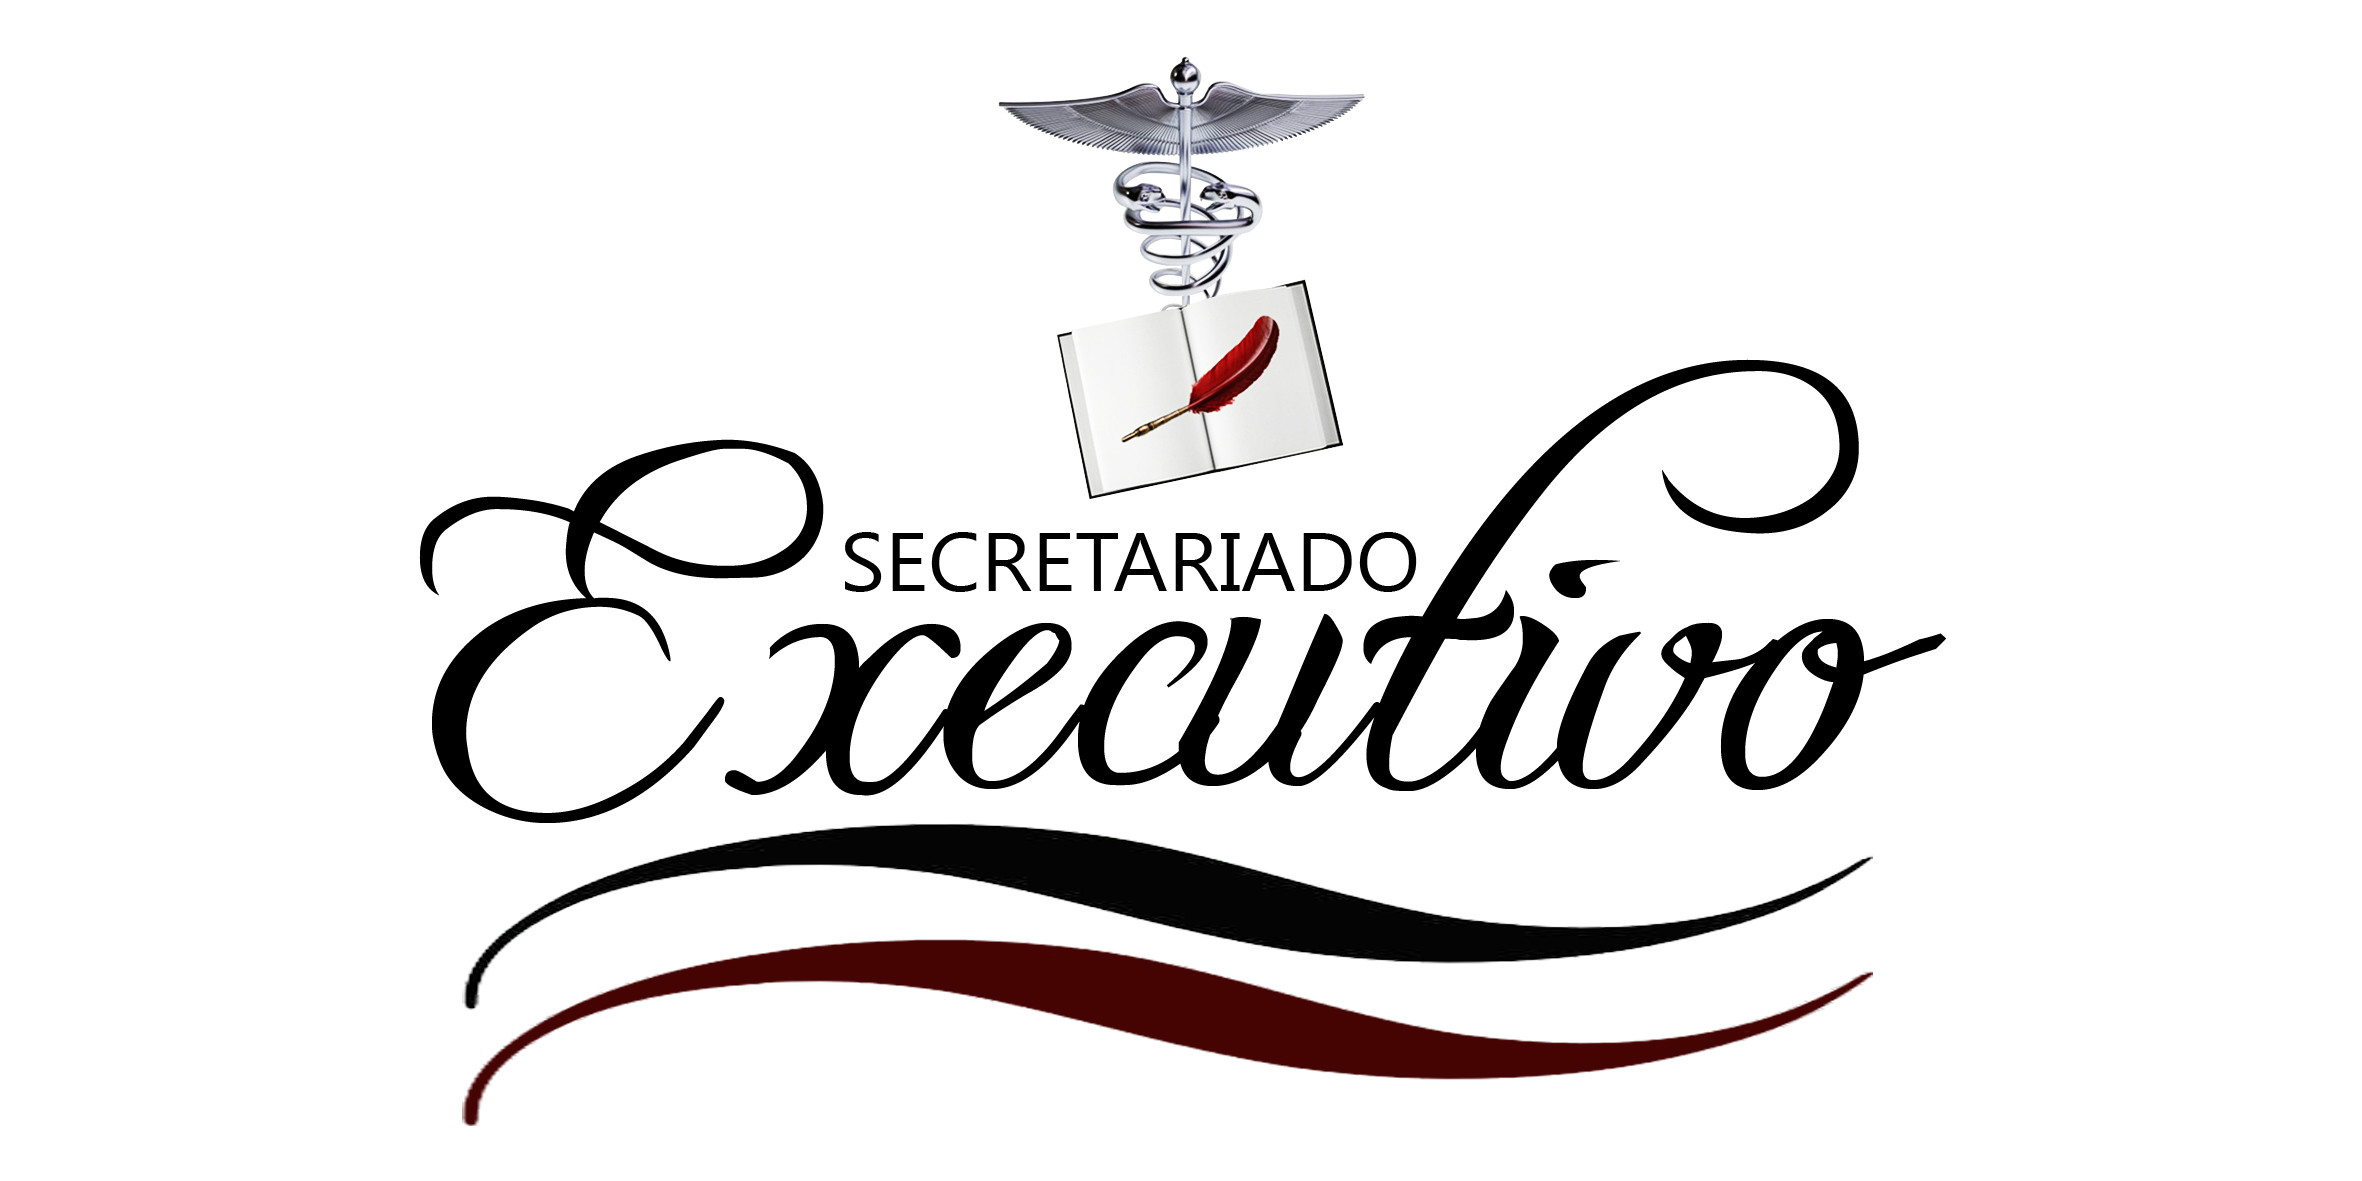 Secretariado Executivo